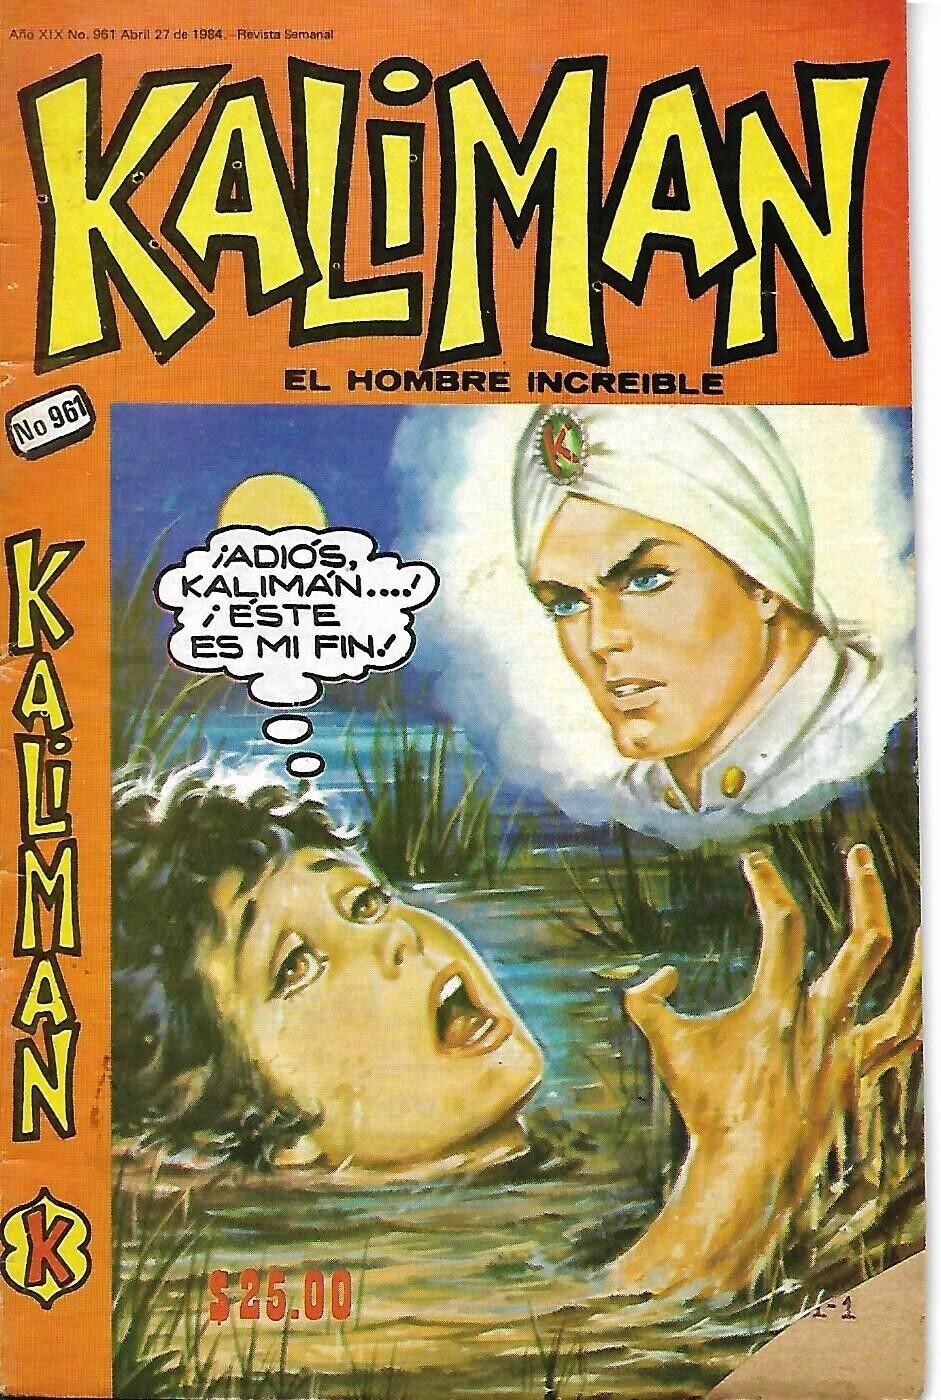 Kaliman El Hombre Increible #960 - Abril 27, 1984 - Mexico